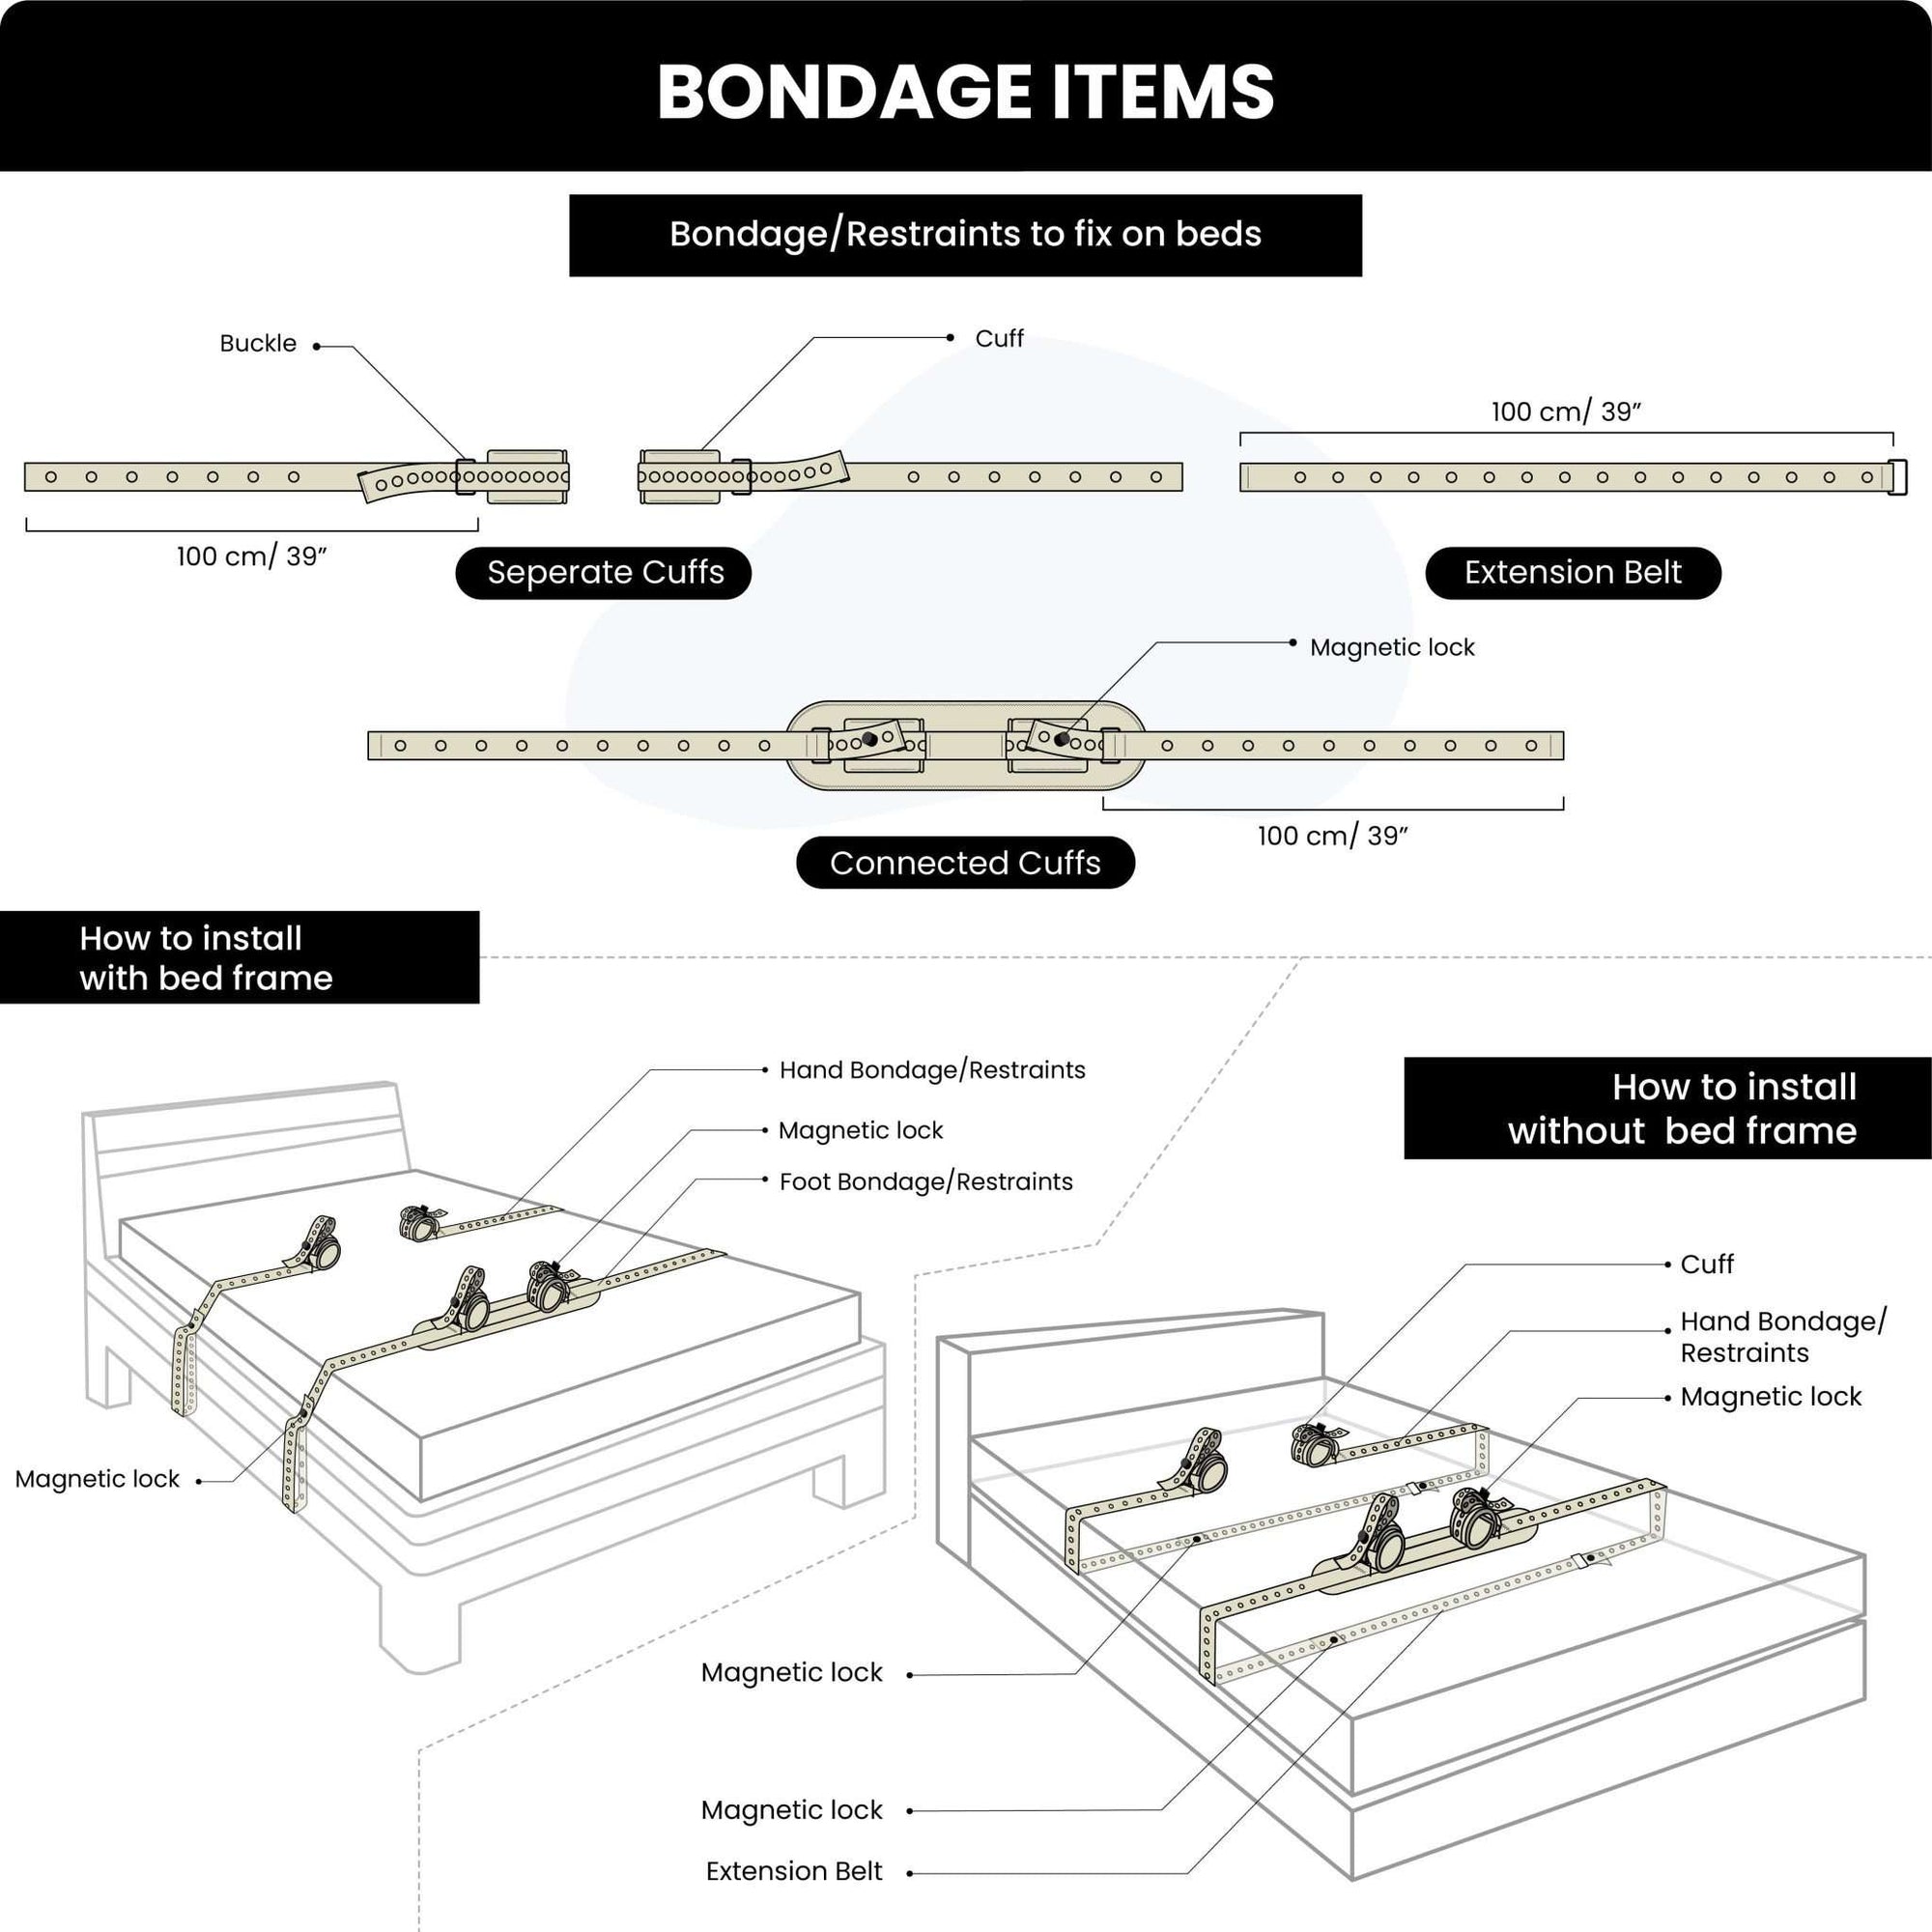 Extension Belt Bondage Restraint 100cm/39''